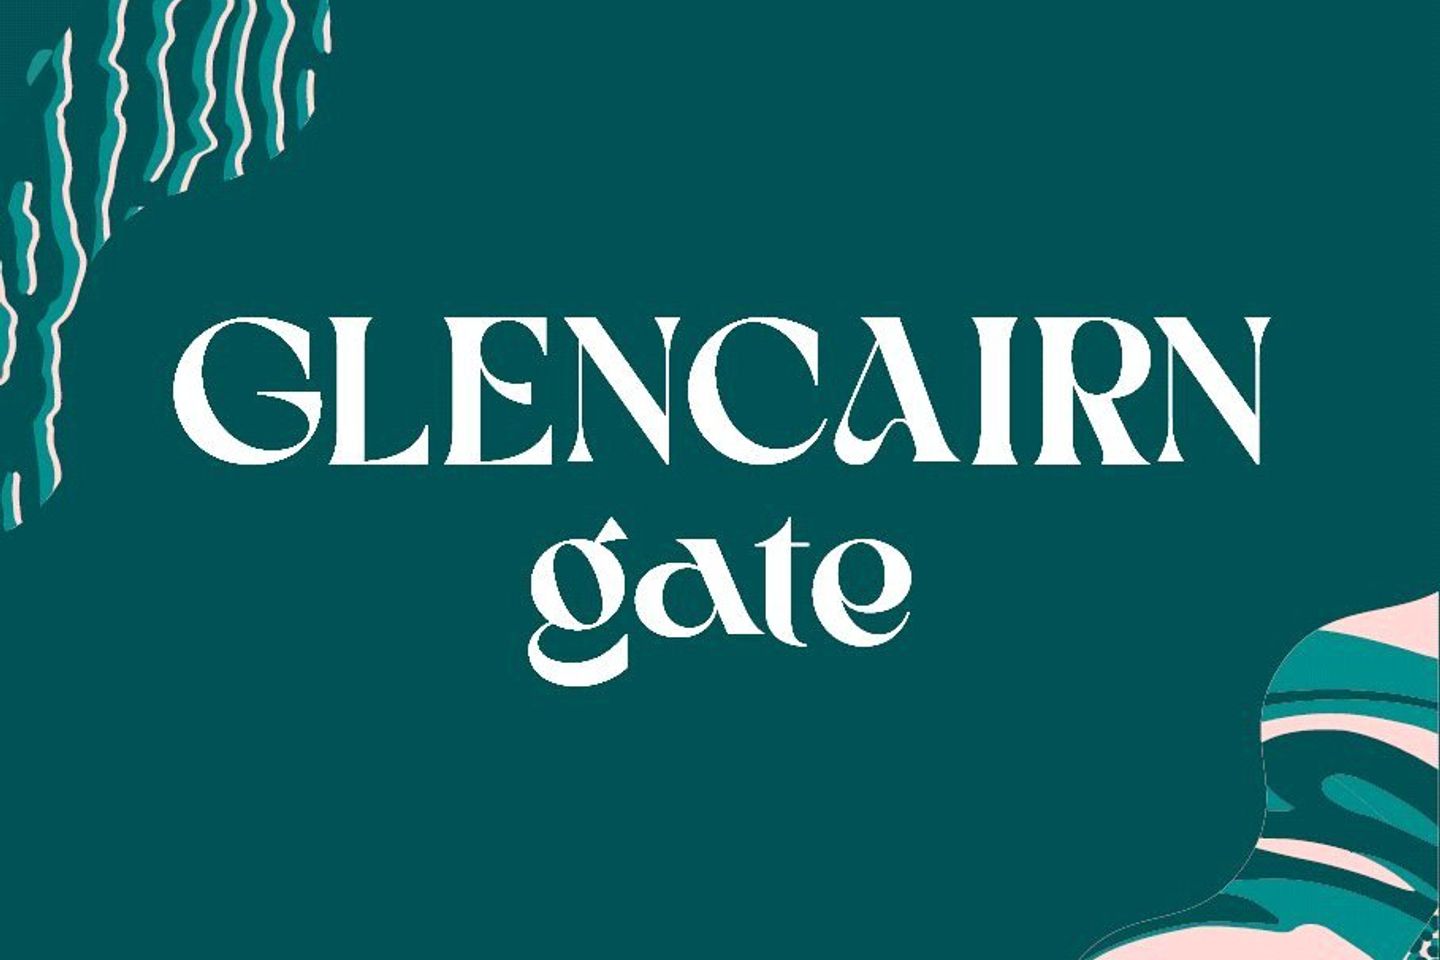 Beech, Glencairn Gate, Glencairn Gate, Glencairn Gate, Leopardstown, Dublin 18